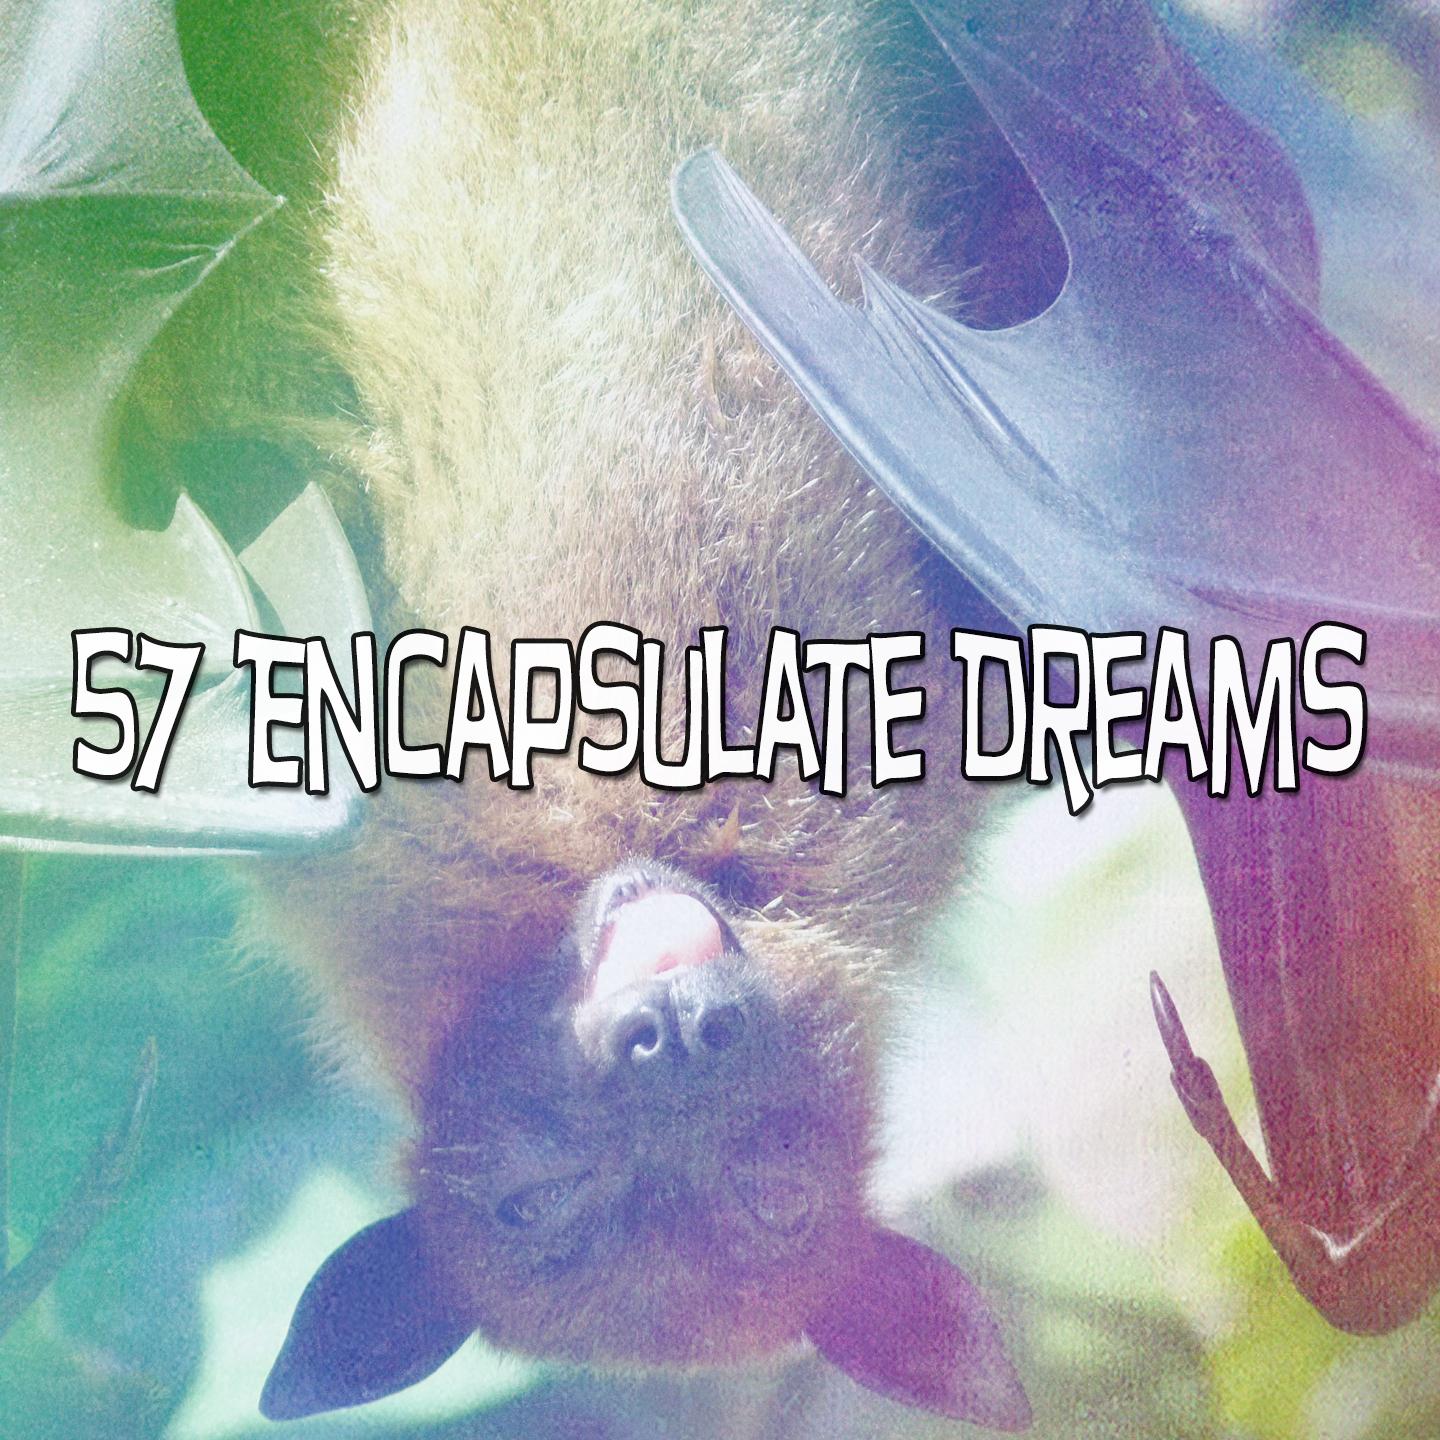 57 Encapsulate Dreams